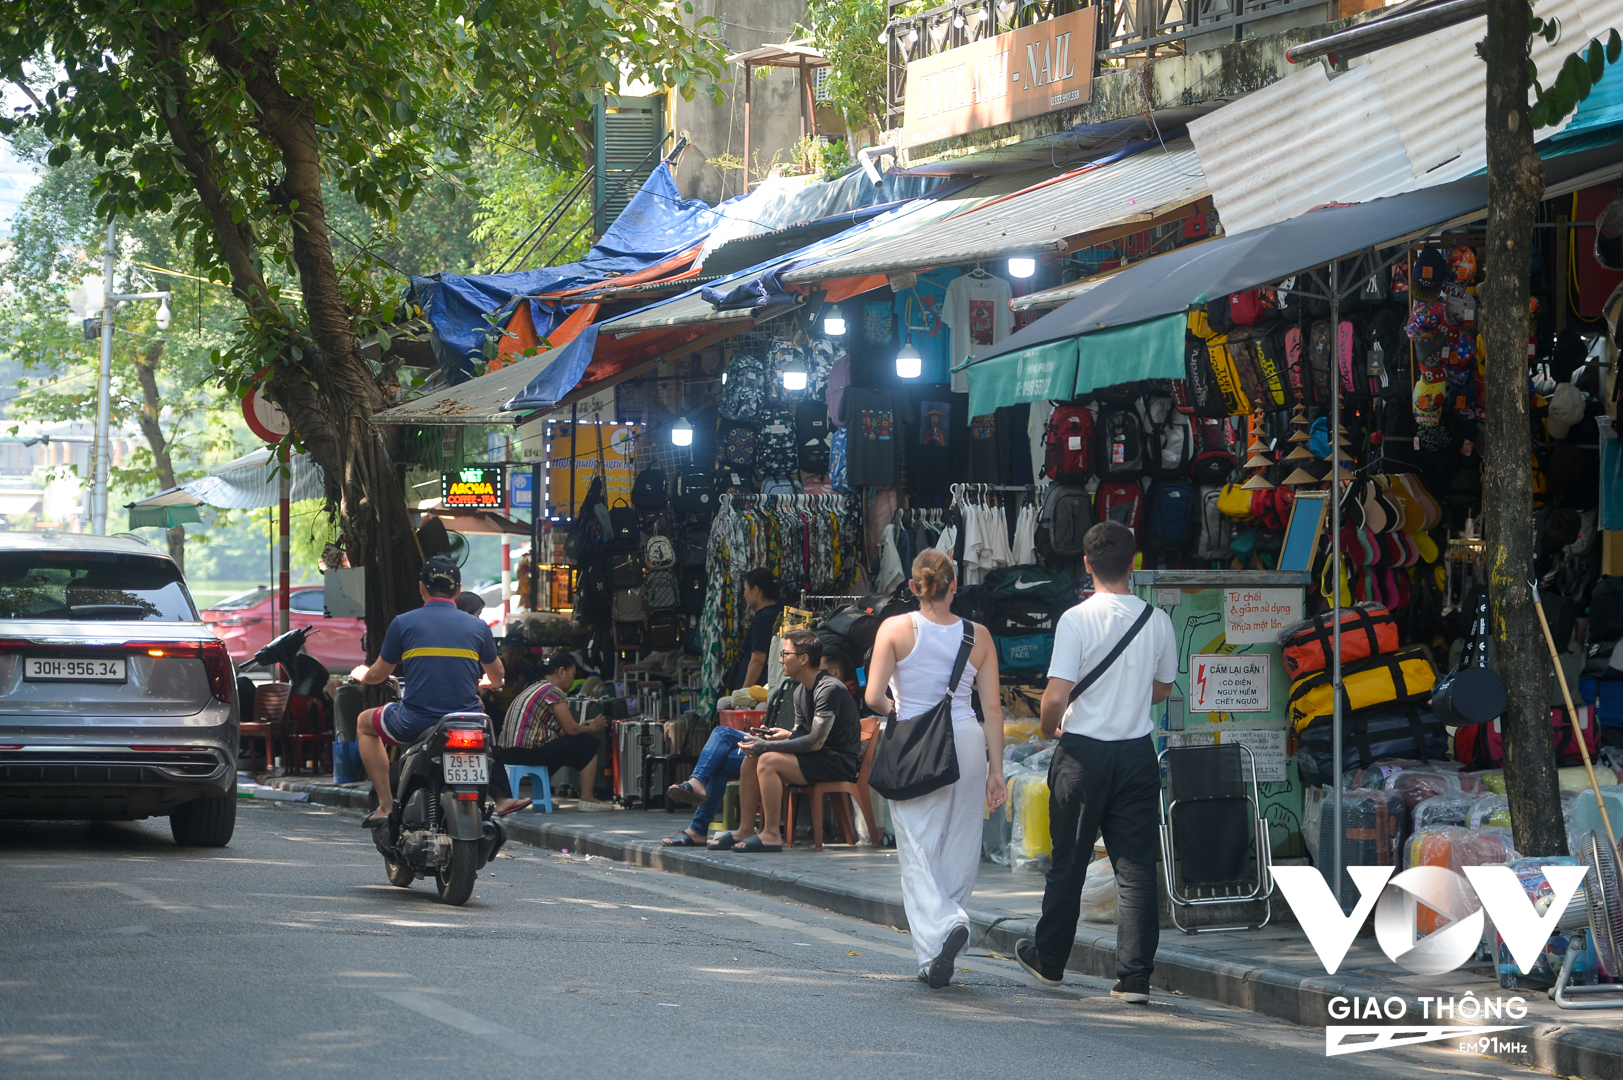 Cũng ở khu vực đầu phố Hàng Dầu, các hàng bán quần áo, balo, giày dép,... chiếm dụng vỉa hè để bày hàng hóa, người đi bộ, khách du lịch đi bộ bị đẩy xuống lòng đường.